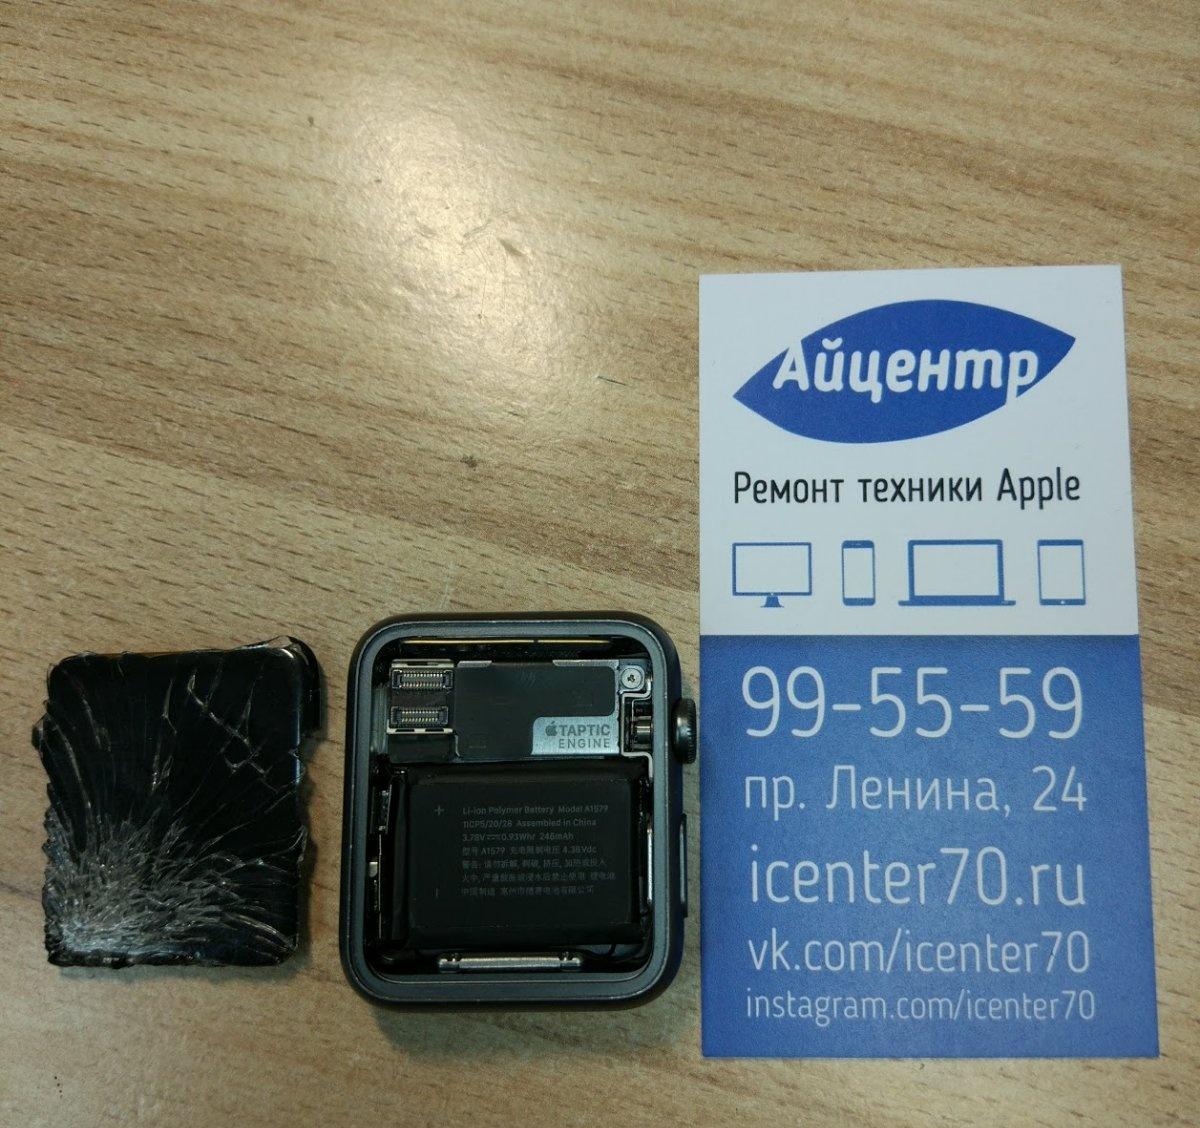 40 24 24 телефон. ICENTR Оренбург.